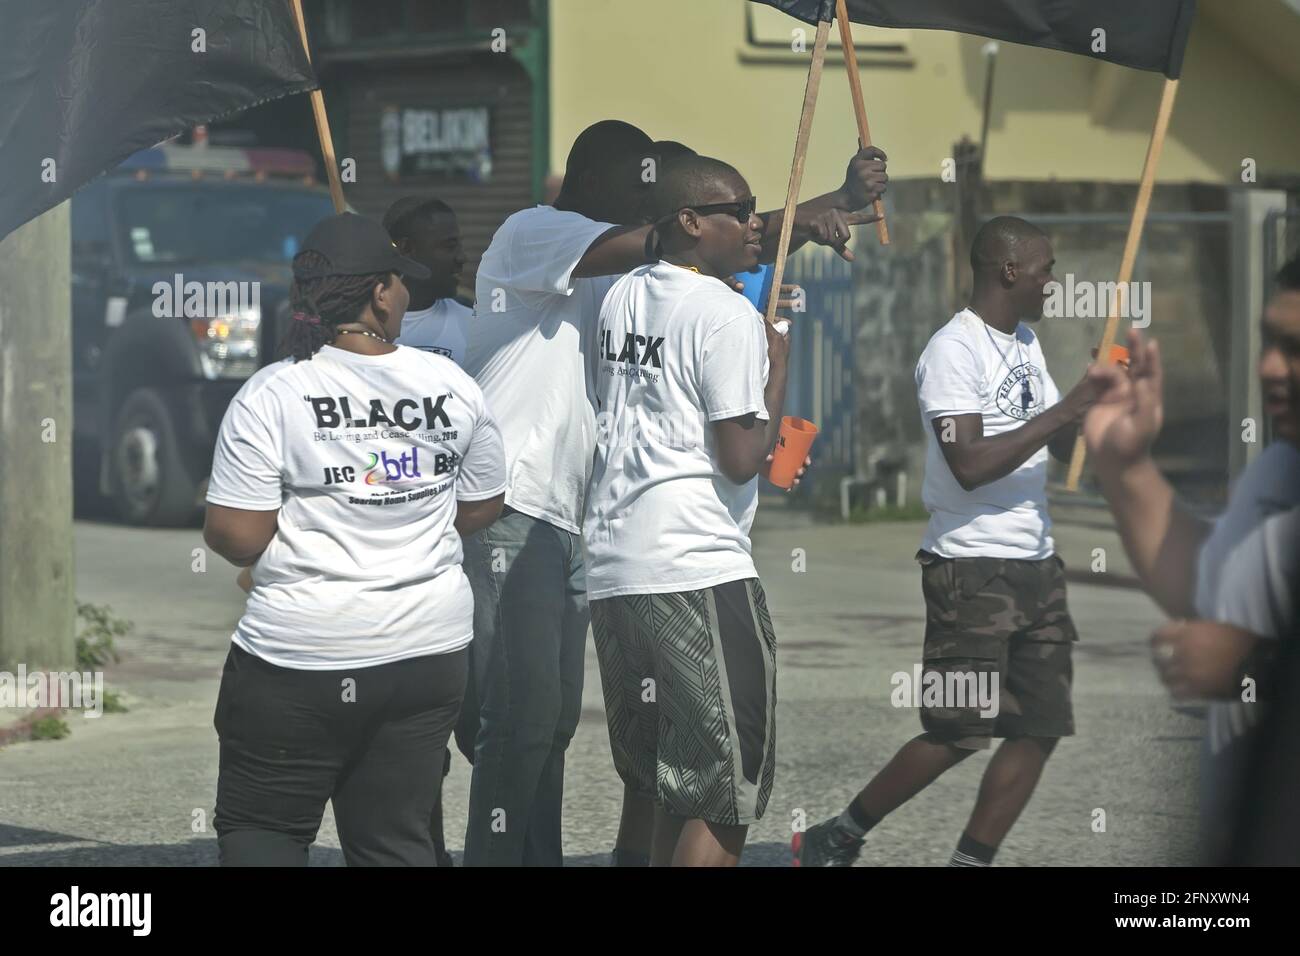 Belize City/Belize - 17. März 2016: Seid liebend und hört auf zu töten: Ein SCHWARZER Marsch gegen Verbrechen und Gewalt. Junge Menschen mit Fahnen auf der Straße. Stockfoto